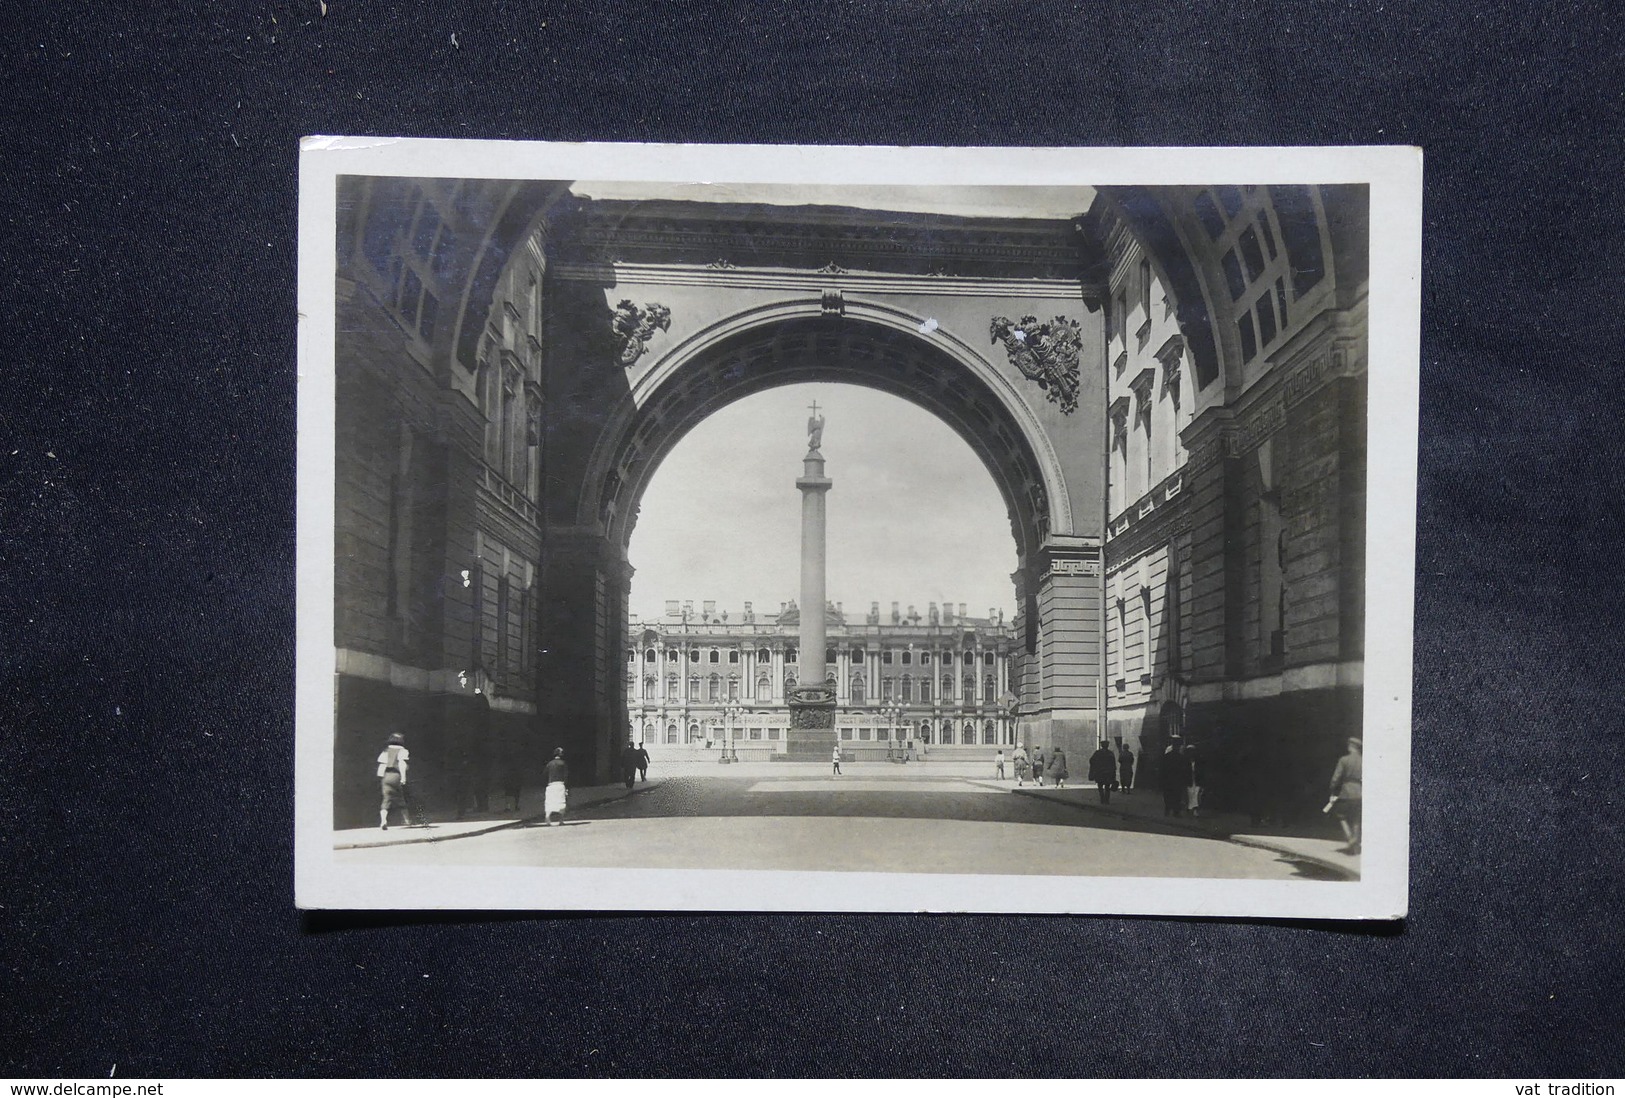 RUSSIE - Carte Postale De Leningrad Pour La France En 1939 - L 27230 - Lettres & Documents